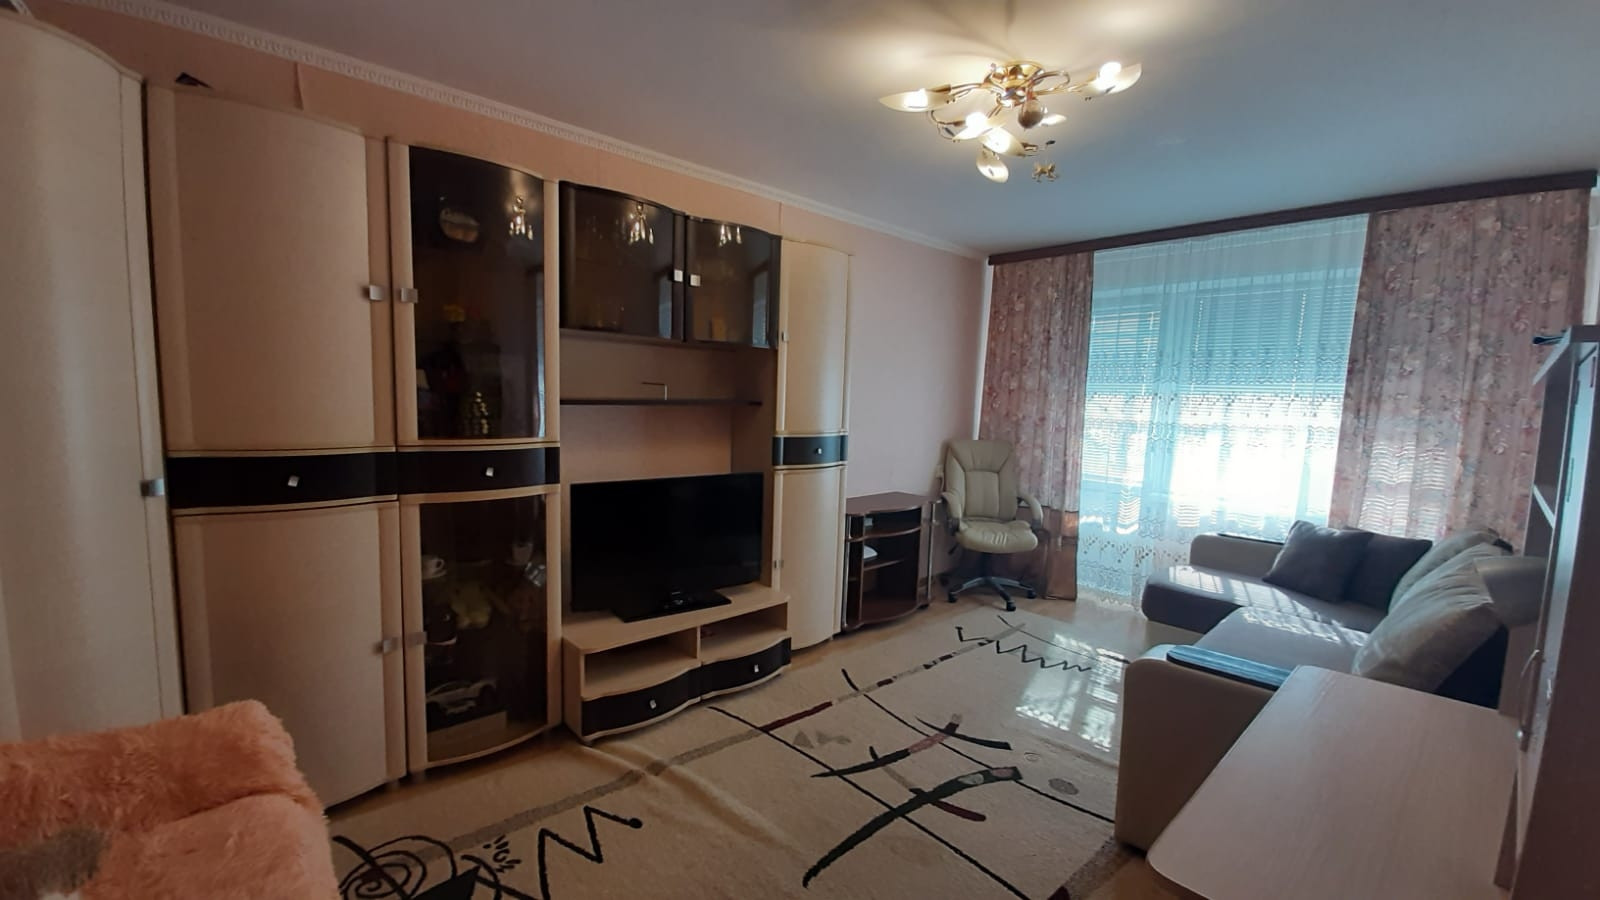 Железногорск курская область купить квартиру 1 комнатную